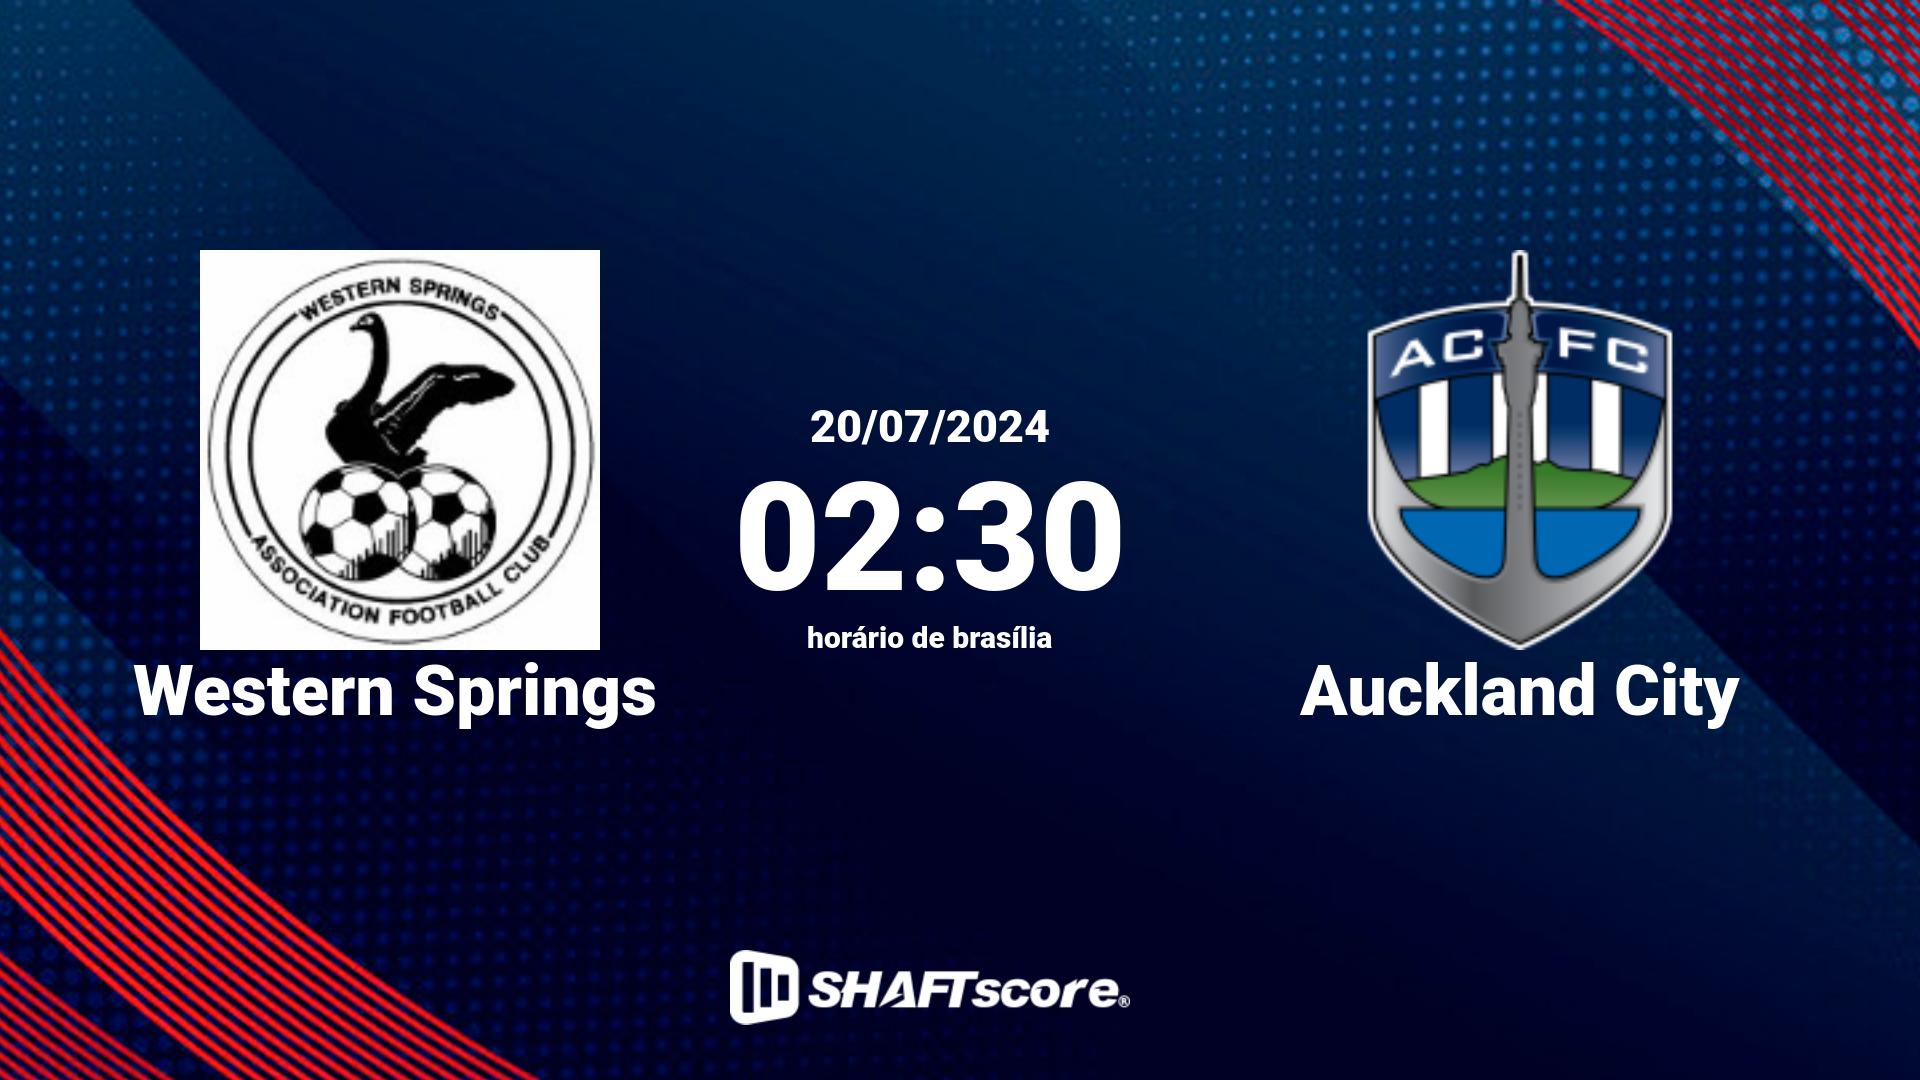 Estatísticas do jogo Western Springs vs Auckland City 20.07 02:30